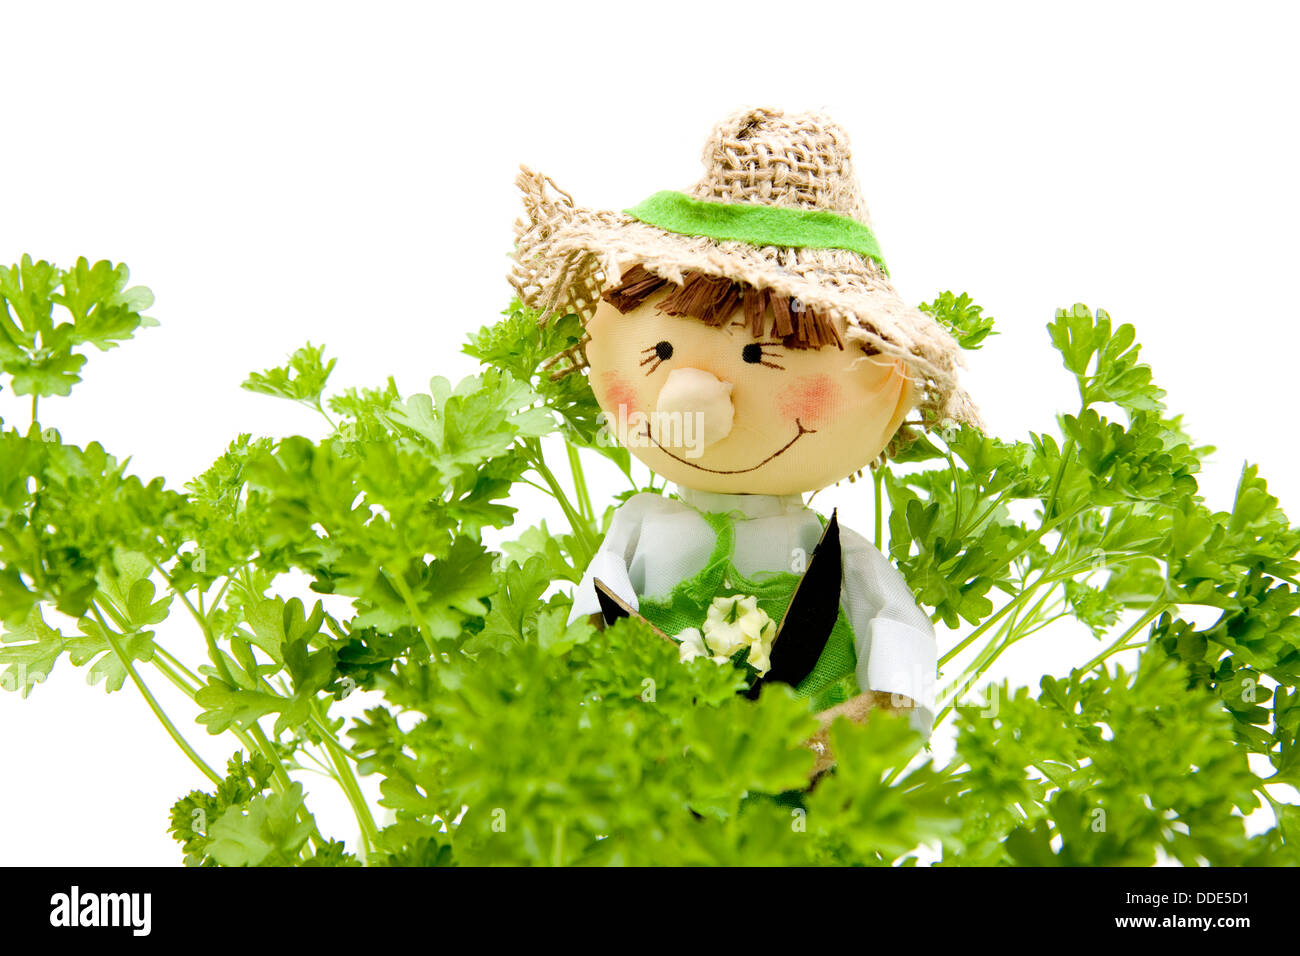 Jardinero muñeco con perejil Fotografía de stock - Alamy